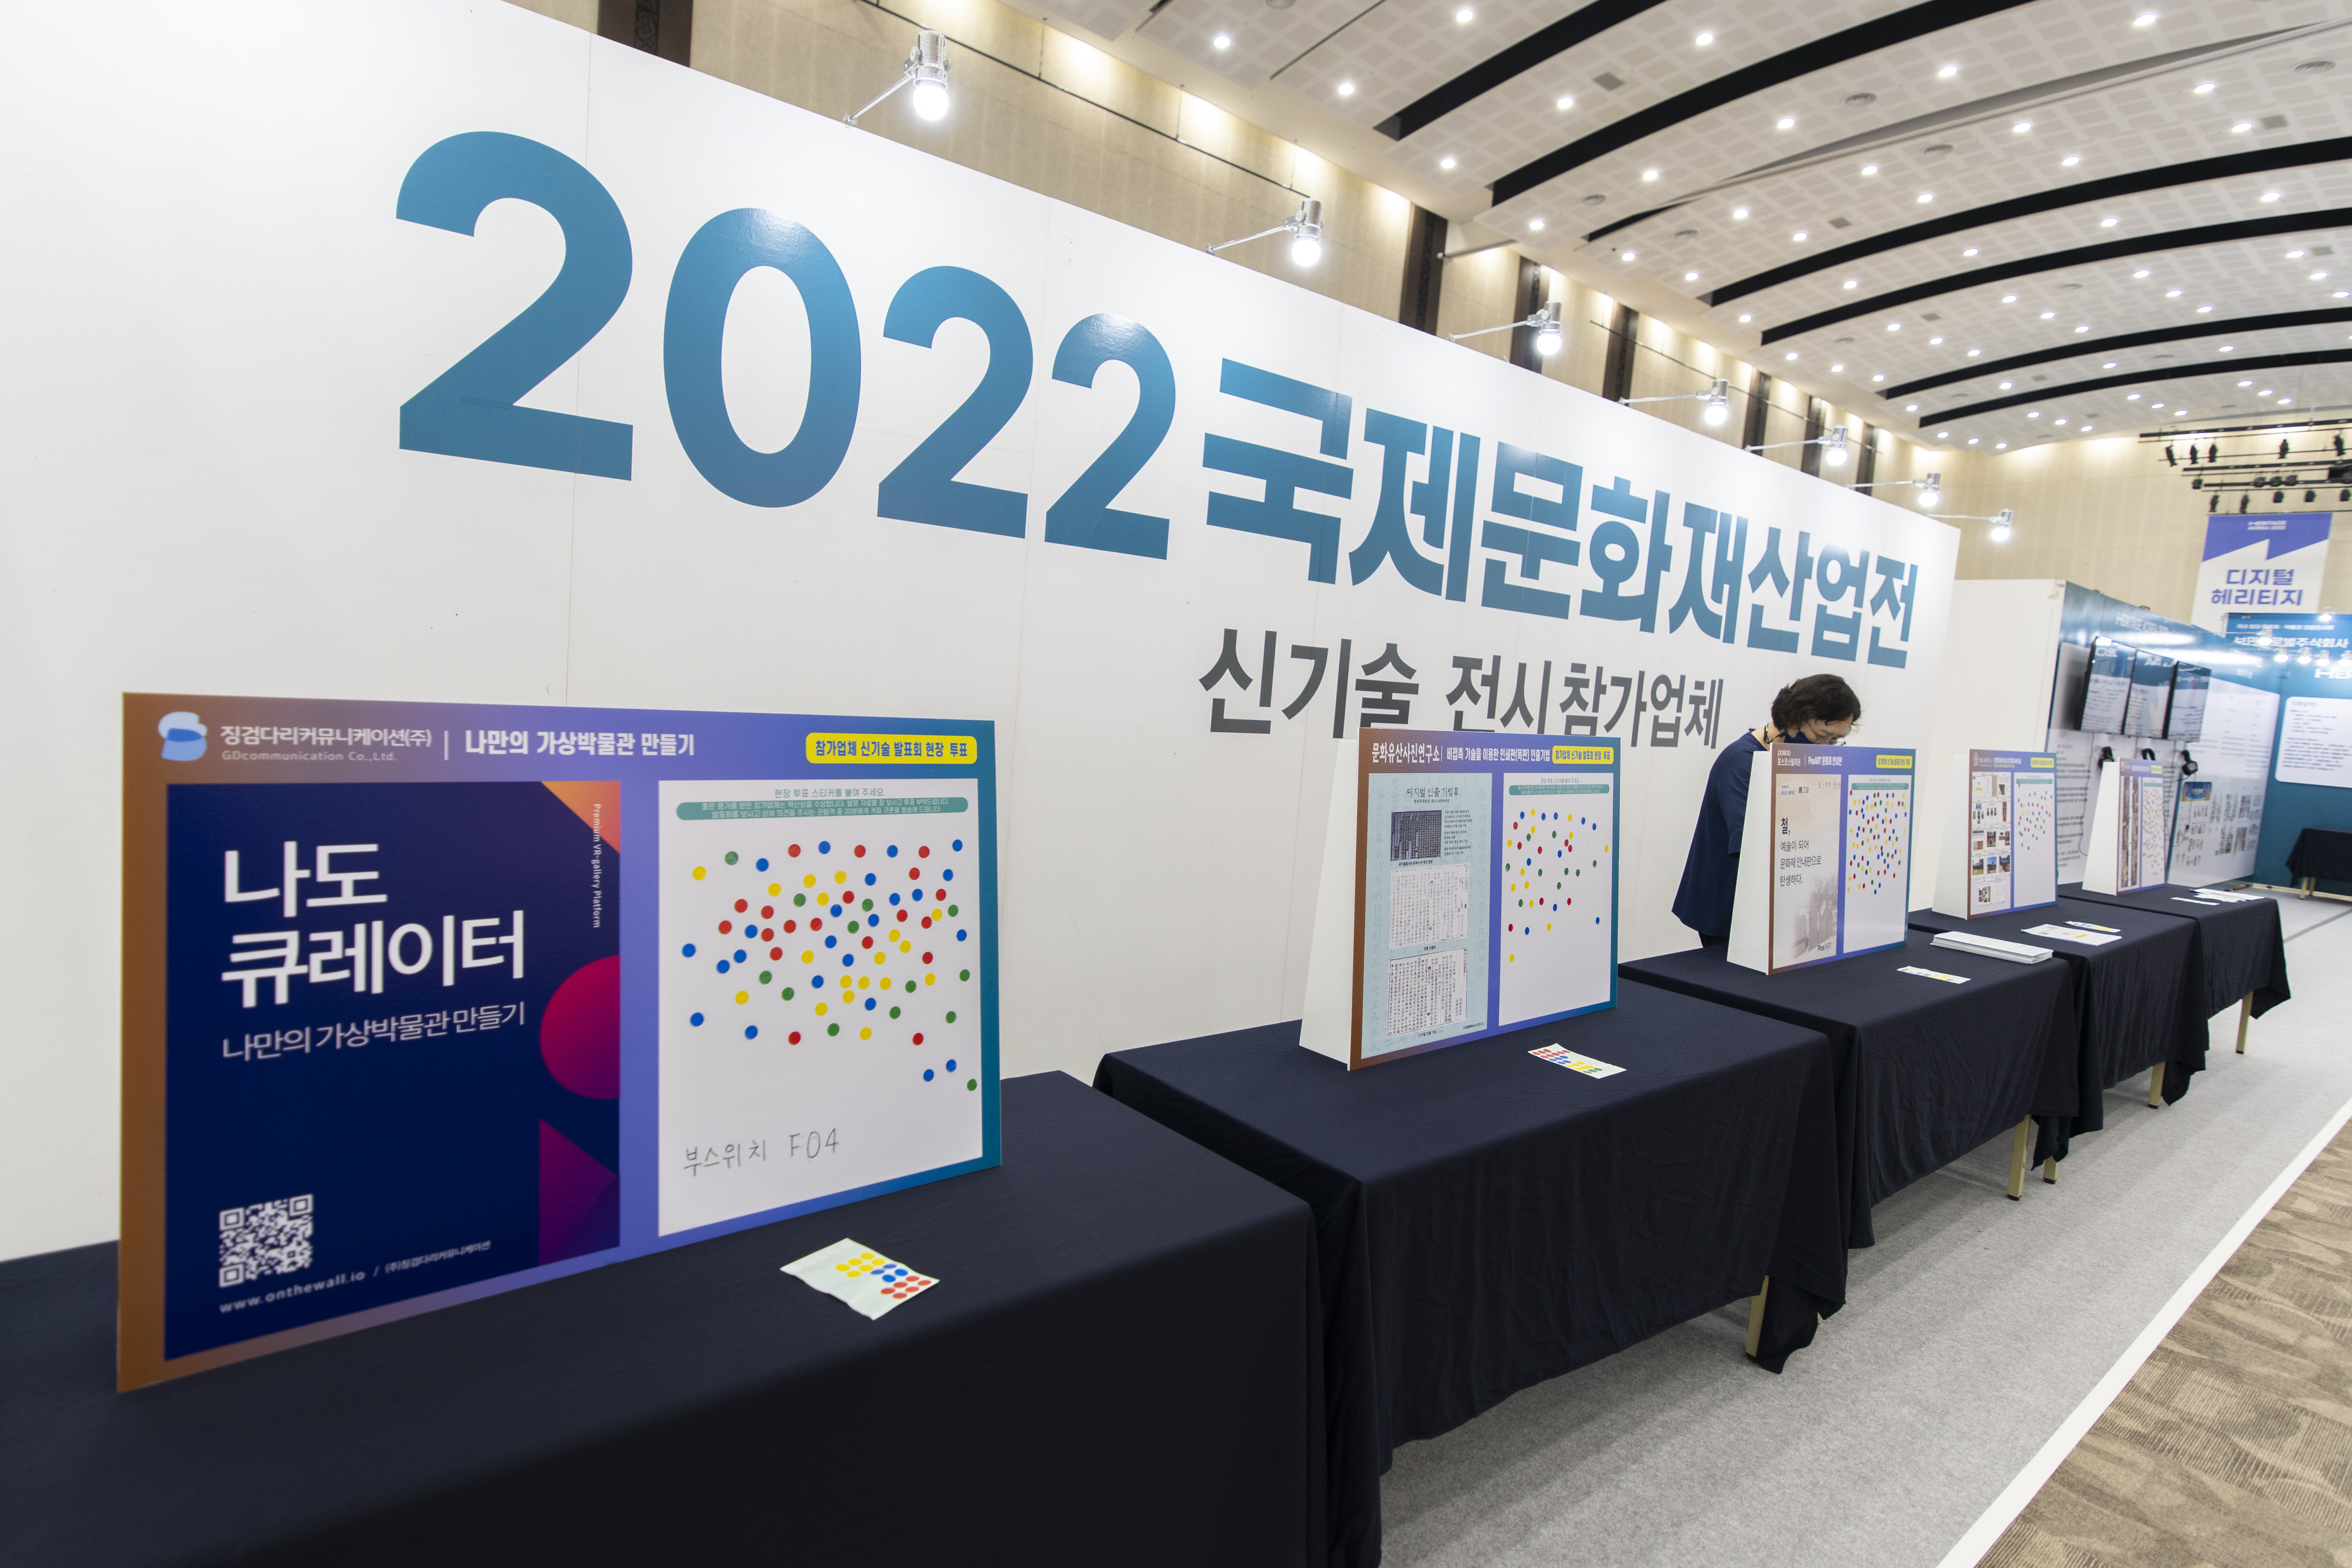 2022 국제문화산업전에서 진행 중인 신기술 투표 현장. 경주 류재민 기자